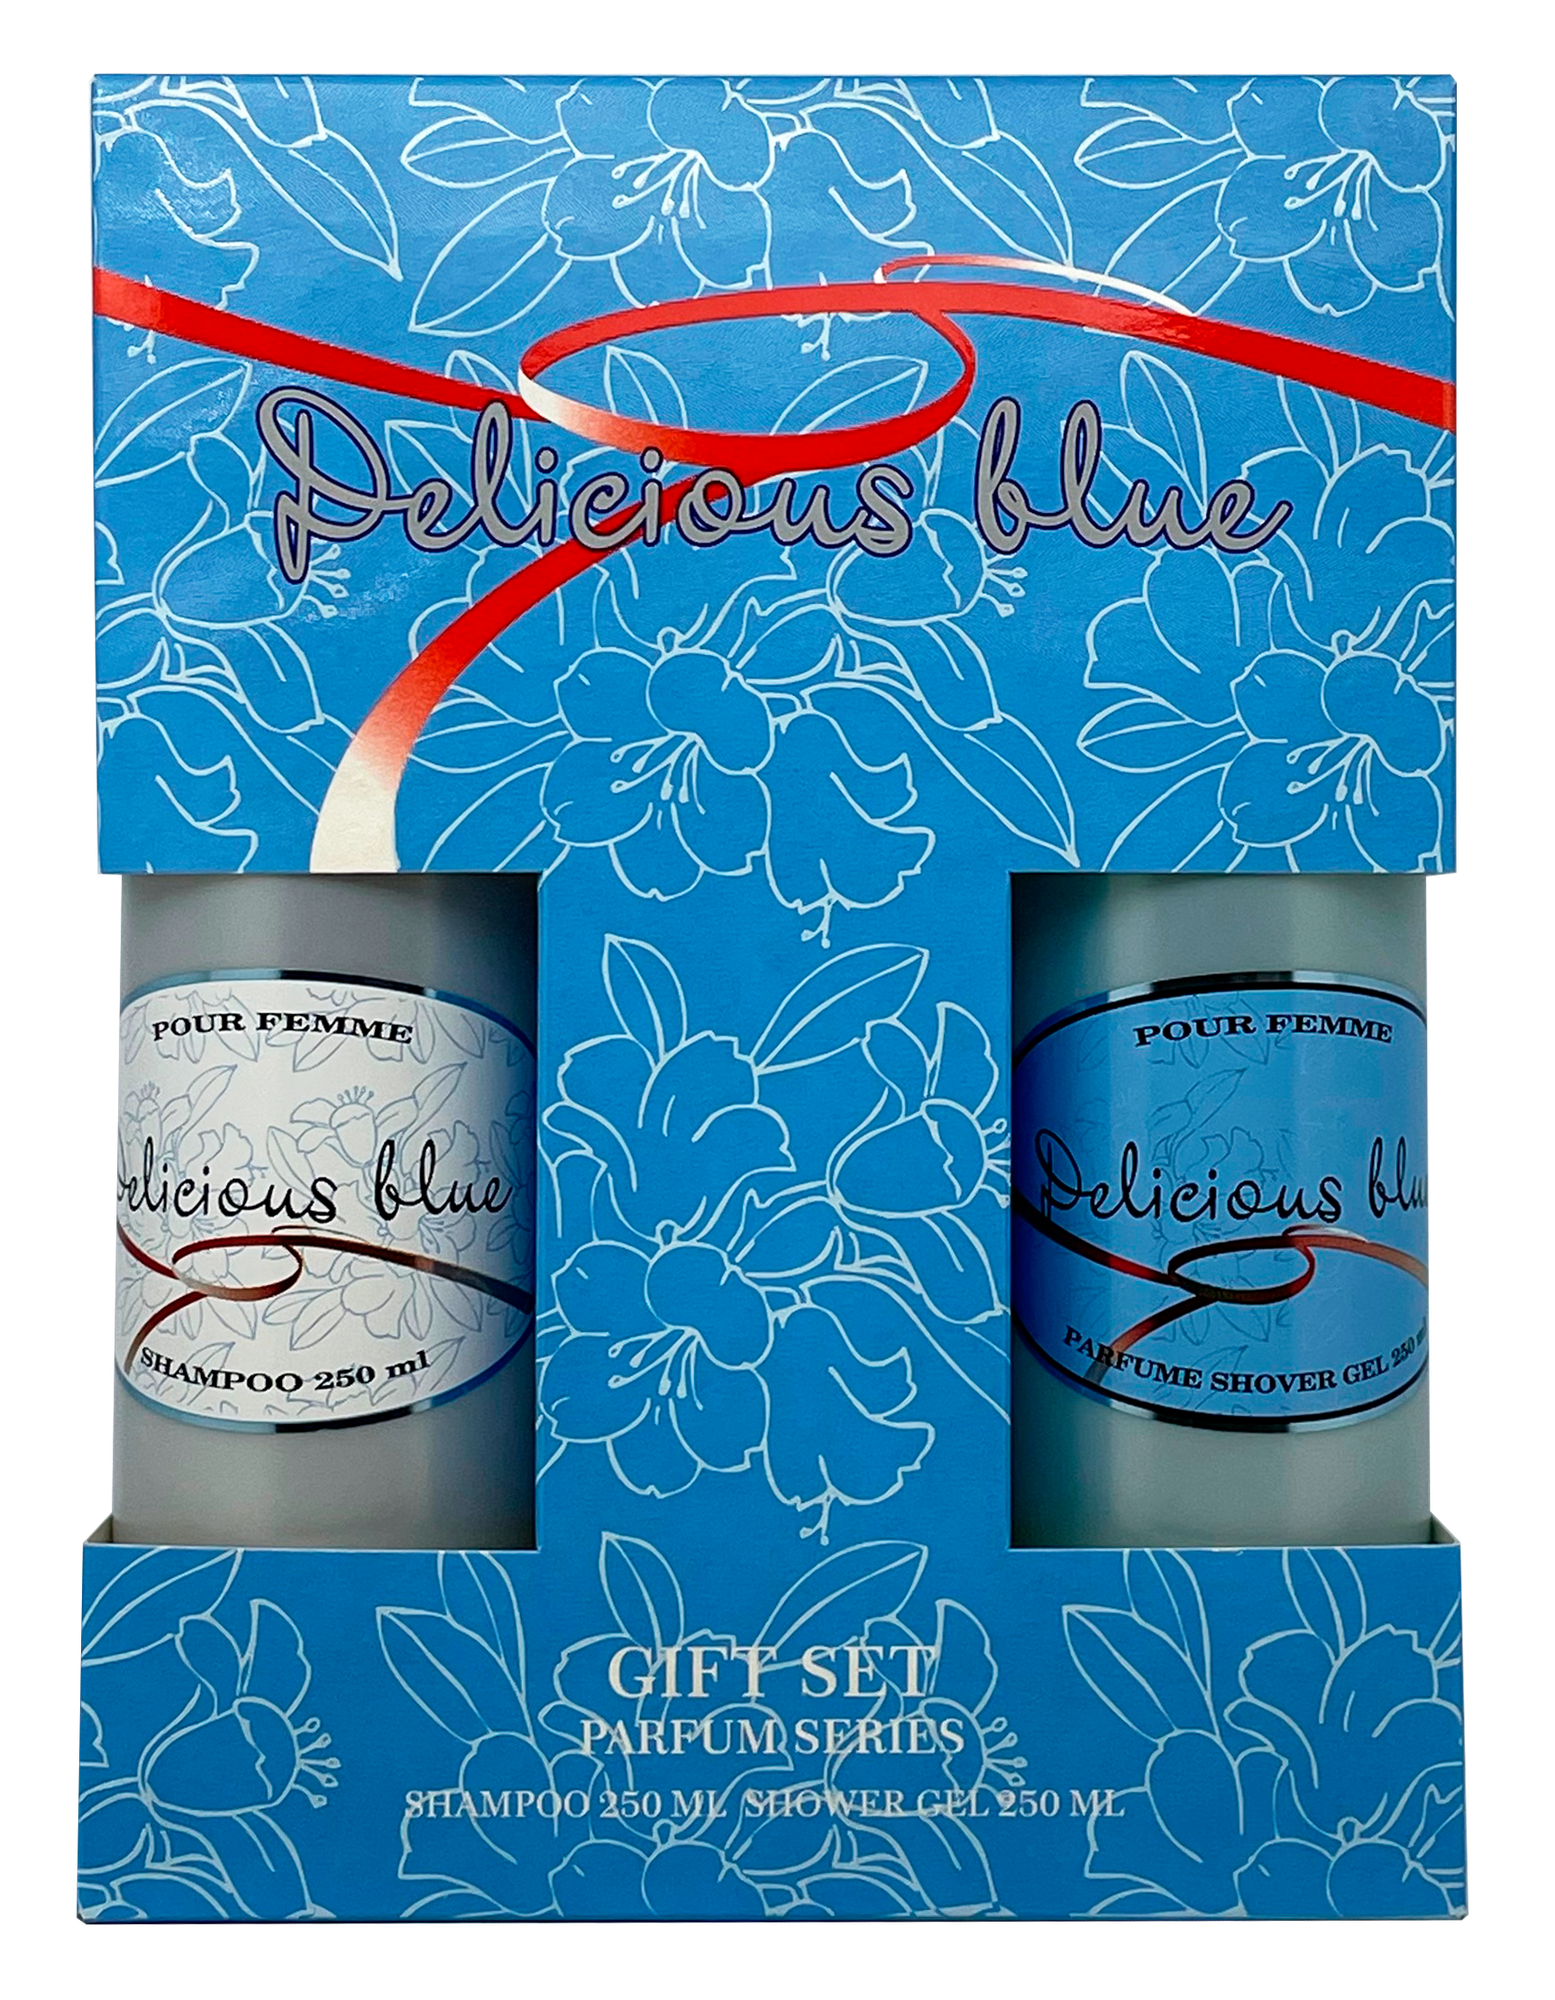 Подарочный косметический парфюмерный набор FESTIVA Parfum Series DELICIOUS BLUE для женщин (Шампунь250мл. + Гель д/душа250мл.)